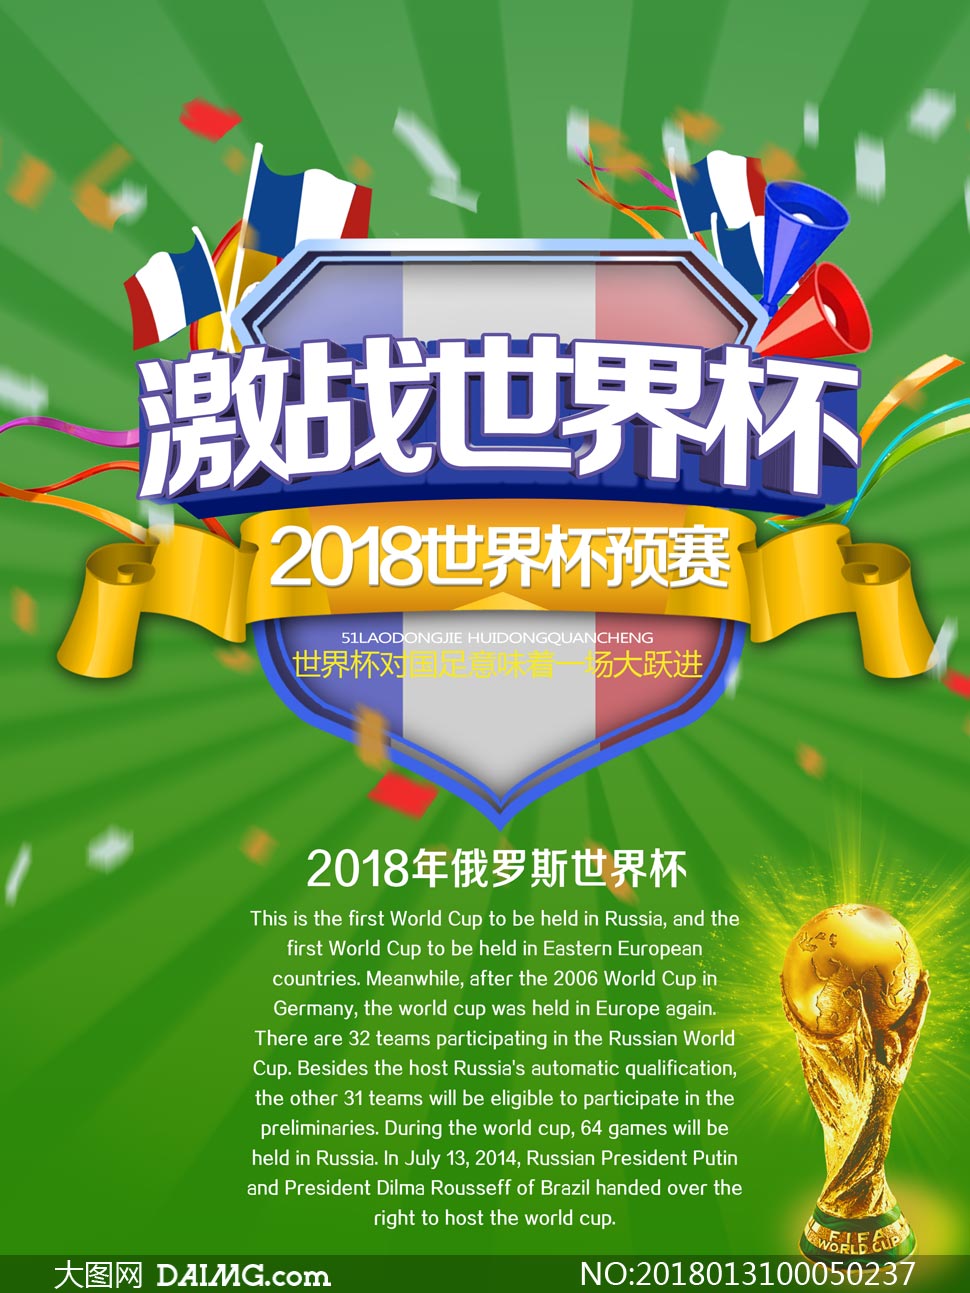 2018激战世界杯宣传海报PSD素材